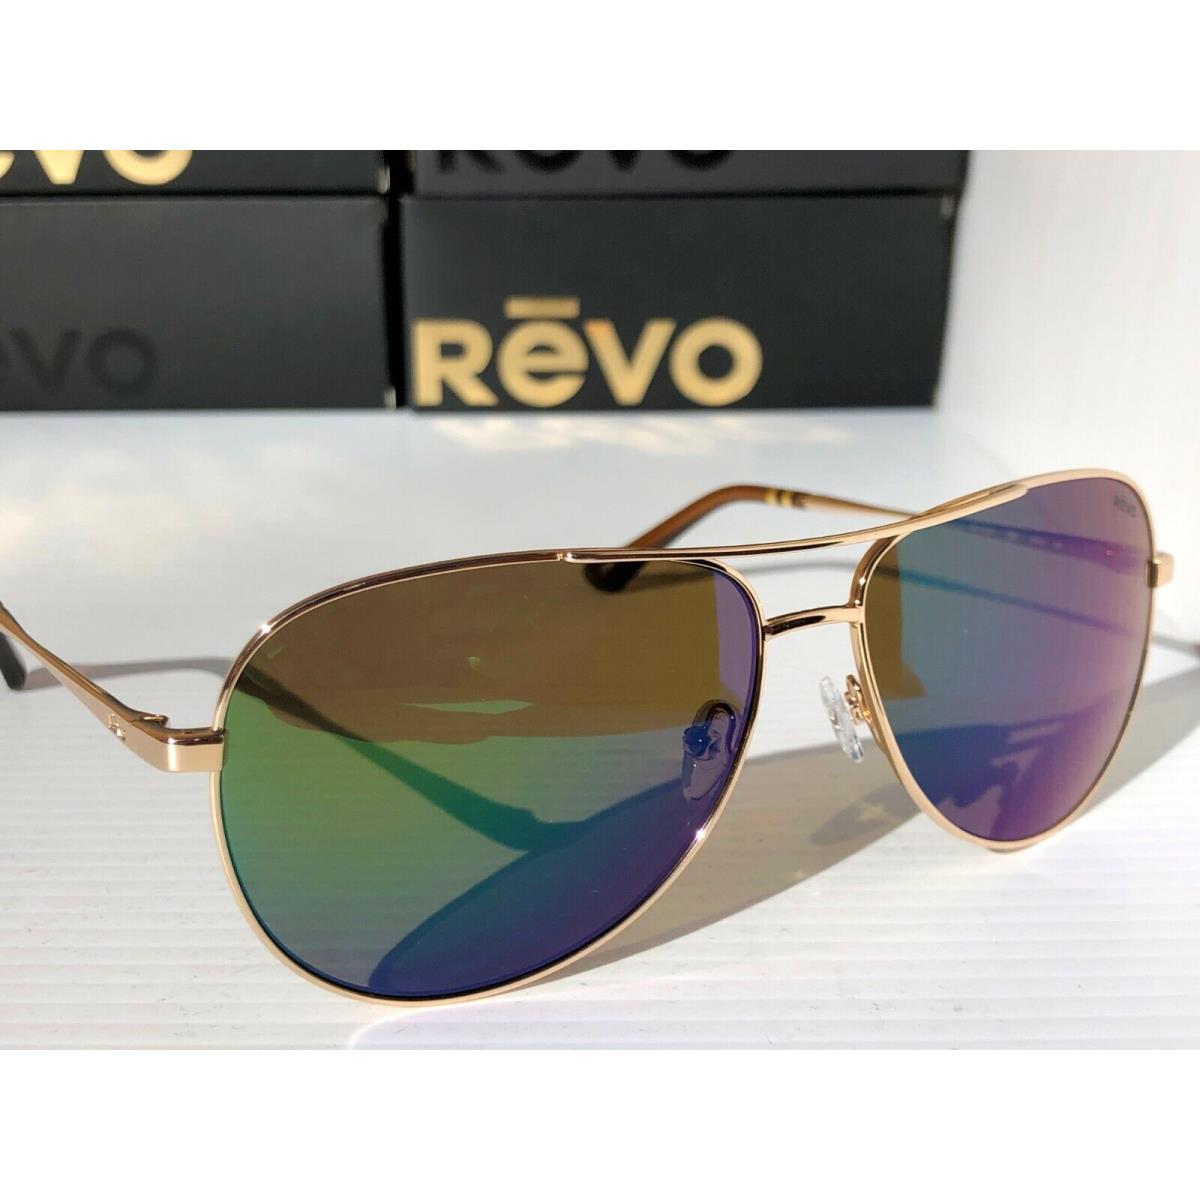 Revo sunglasses SALLY HERSHBERGER - Gold Frame, Green Lens